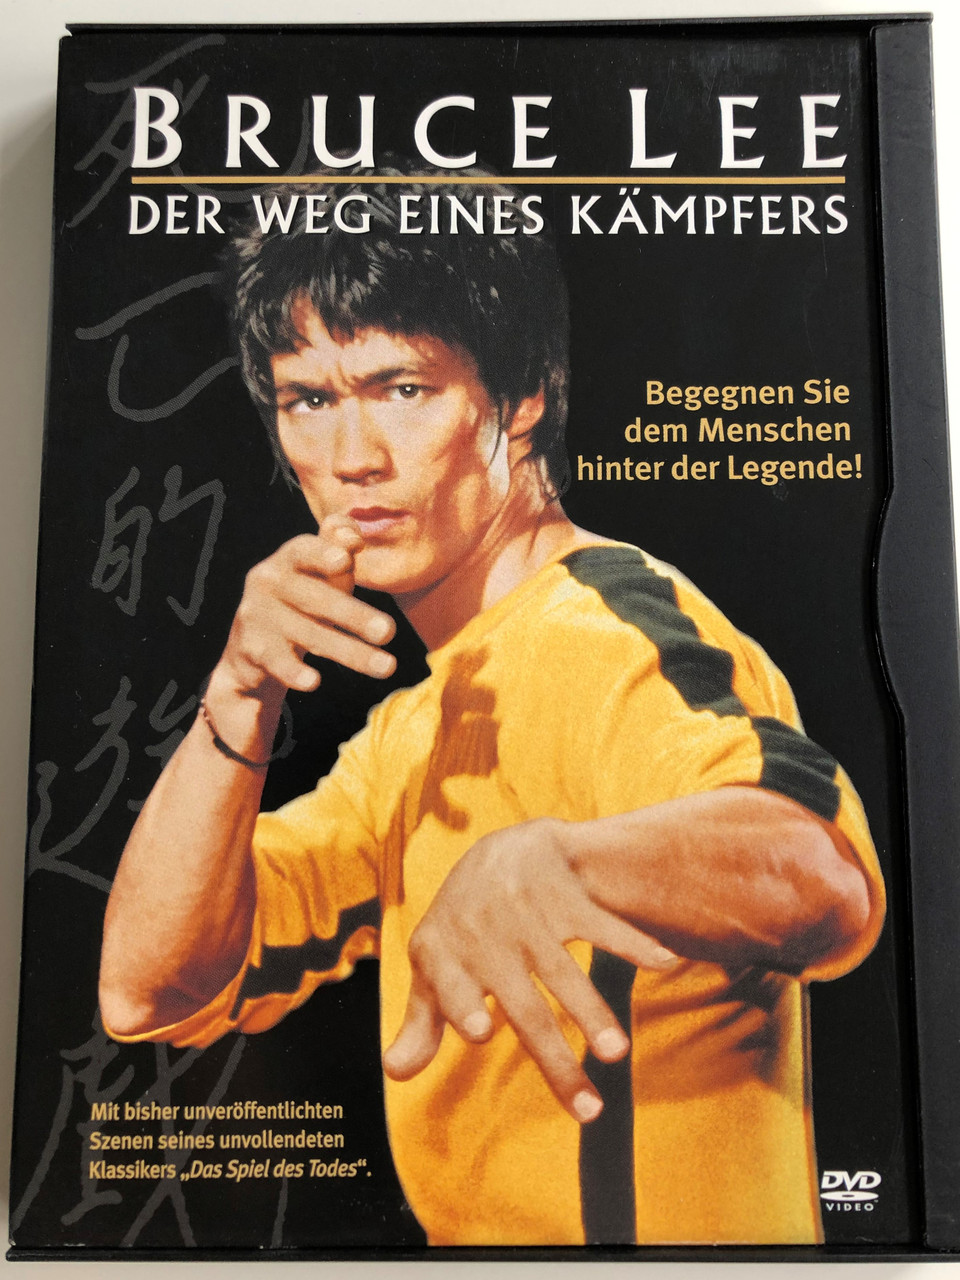 A Warrior's Journey - Bruce Lee DVD 2000 Der Weg eines Kämpfers / Directed  by John Little / Starring: Bruce Lee, Kareem Abdul-Jabbar - Bible in My  Language